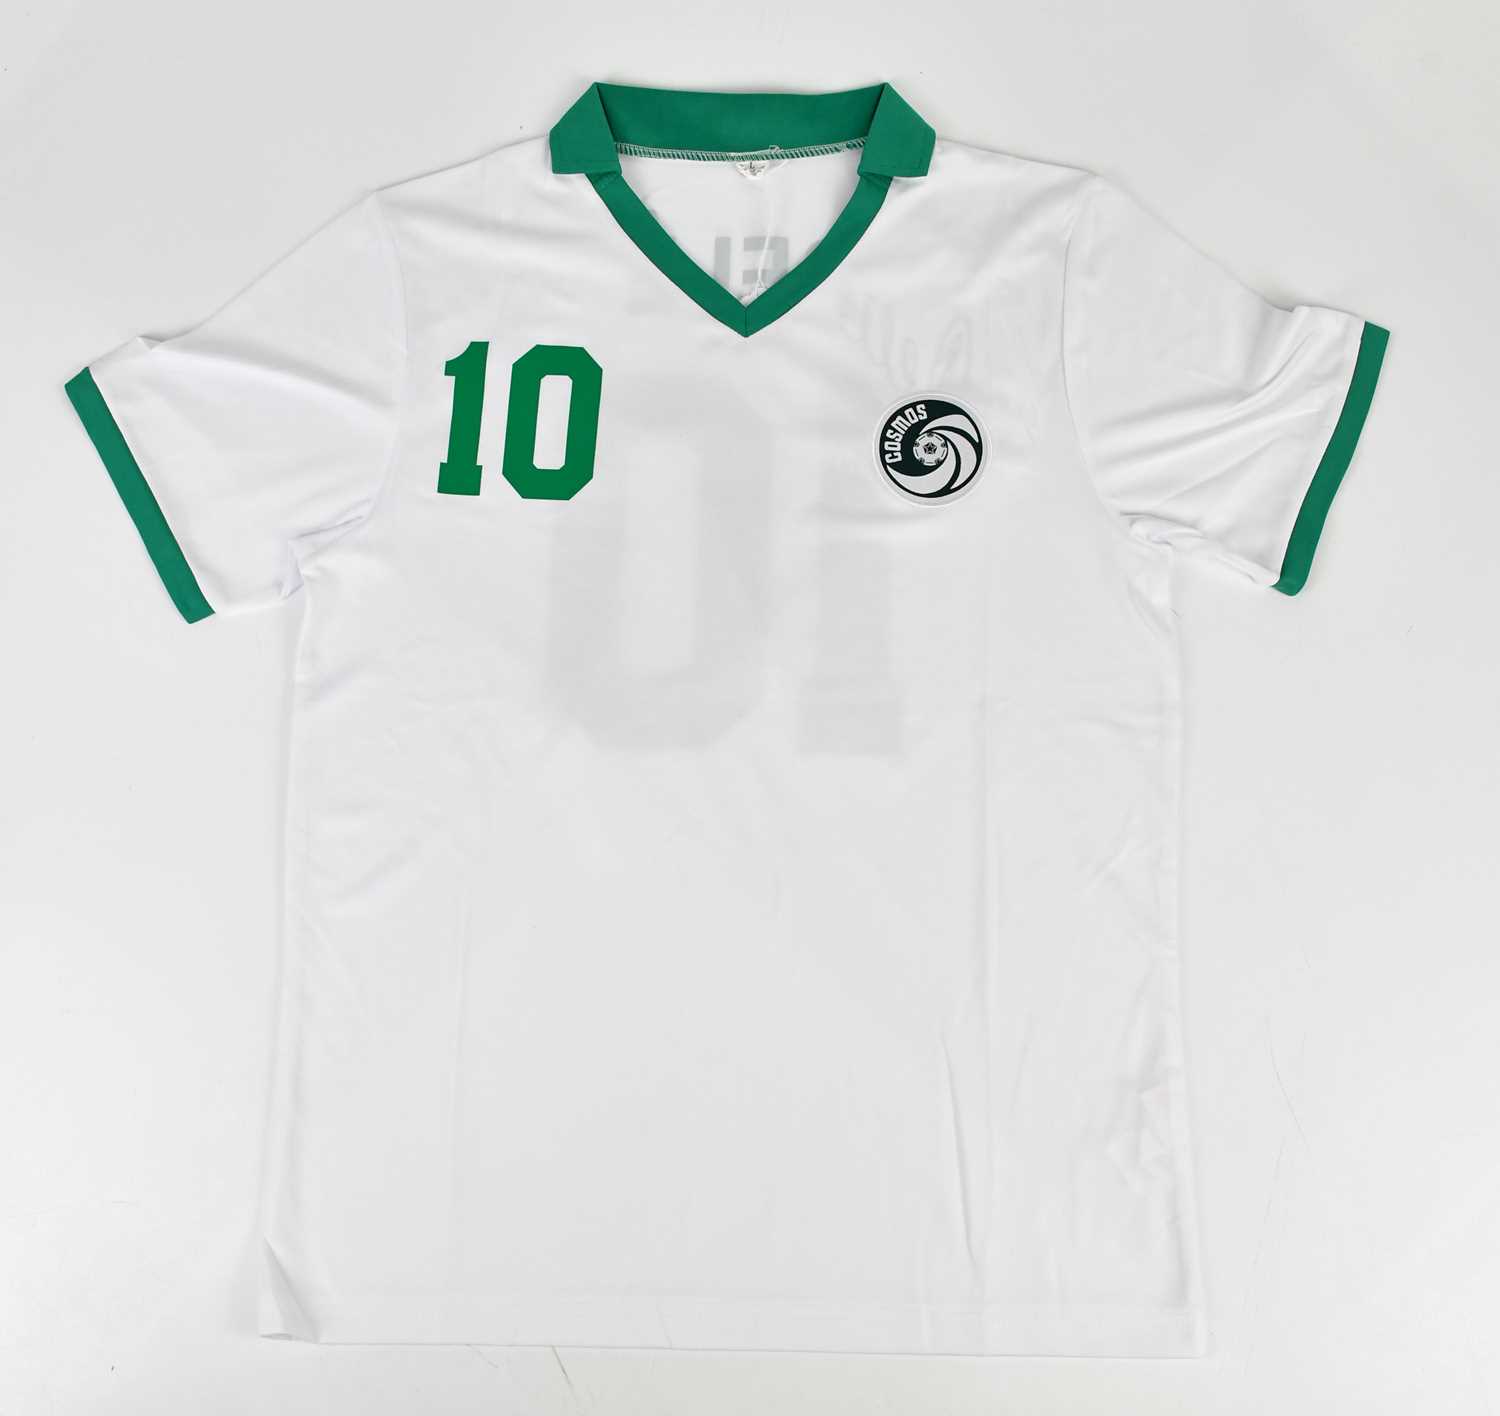 PELÉ (EDSON ARANTES DU NASCIMENTO); a signed New York Cosmos retro style football shirt, signed to